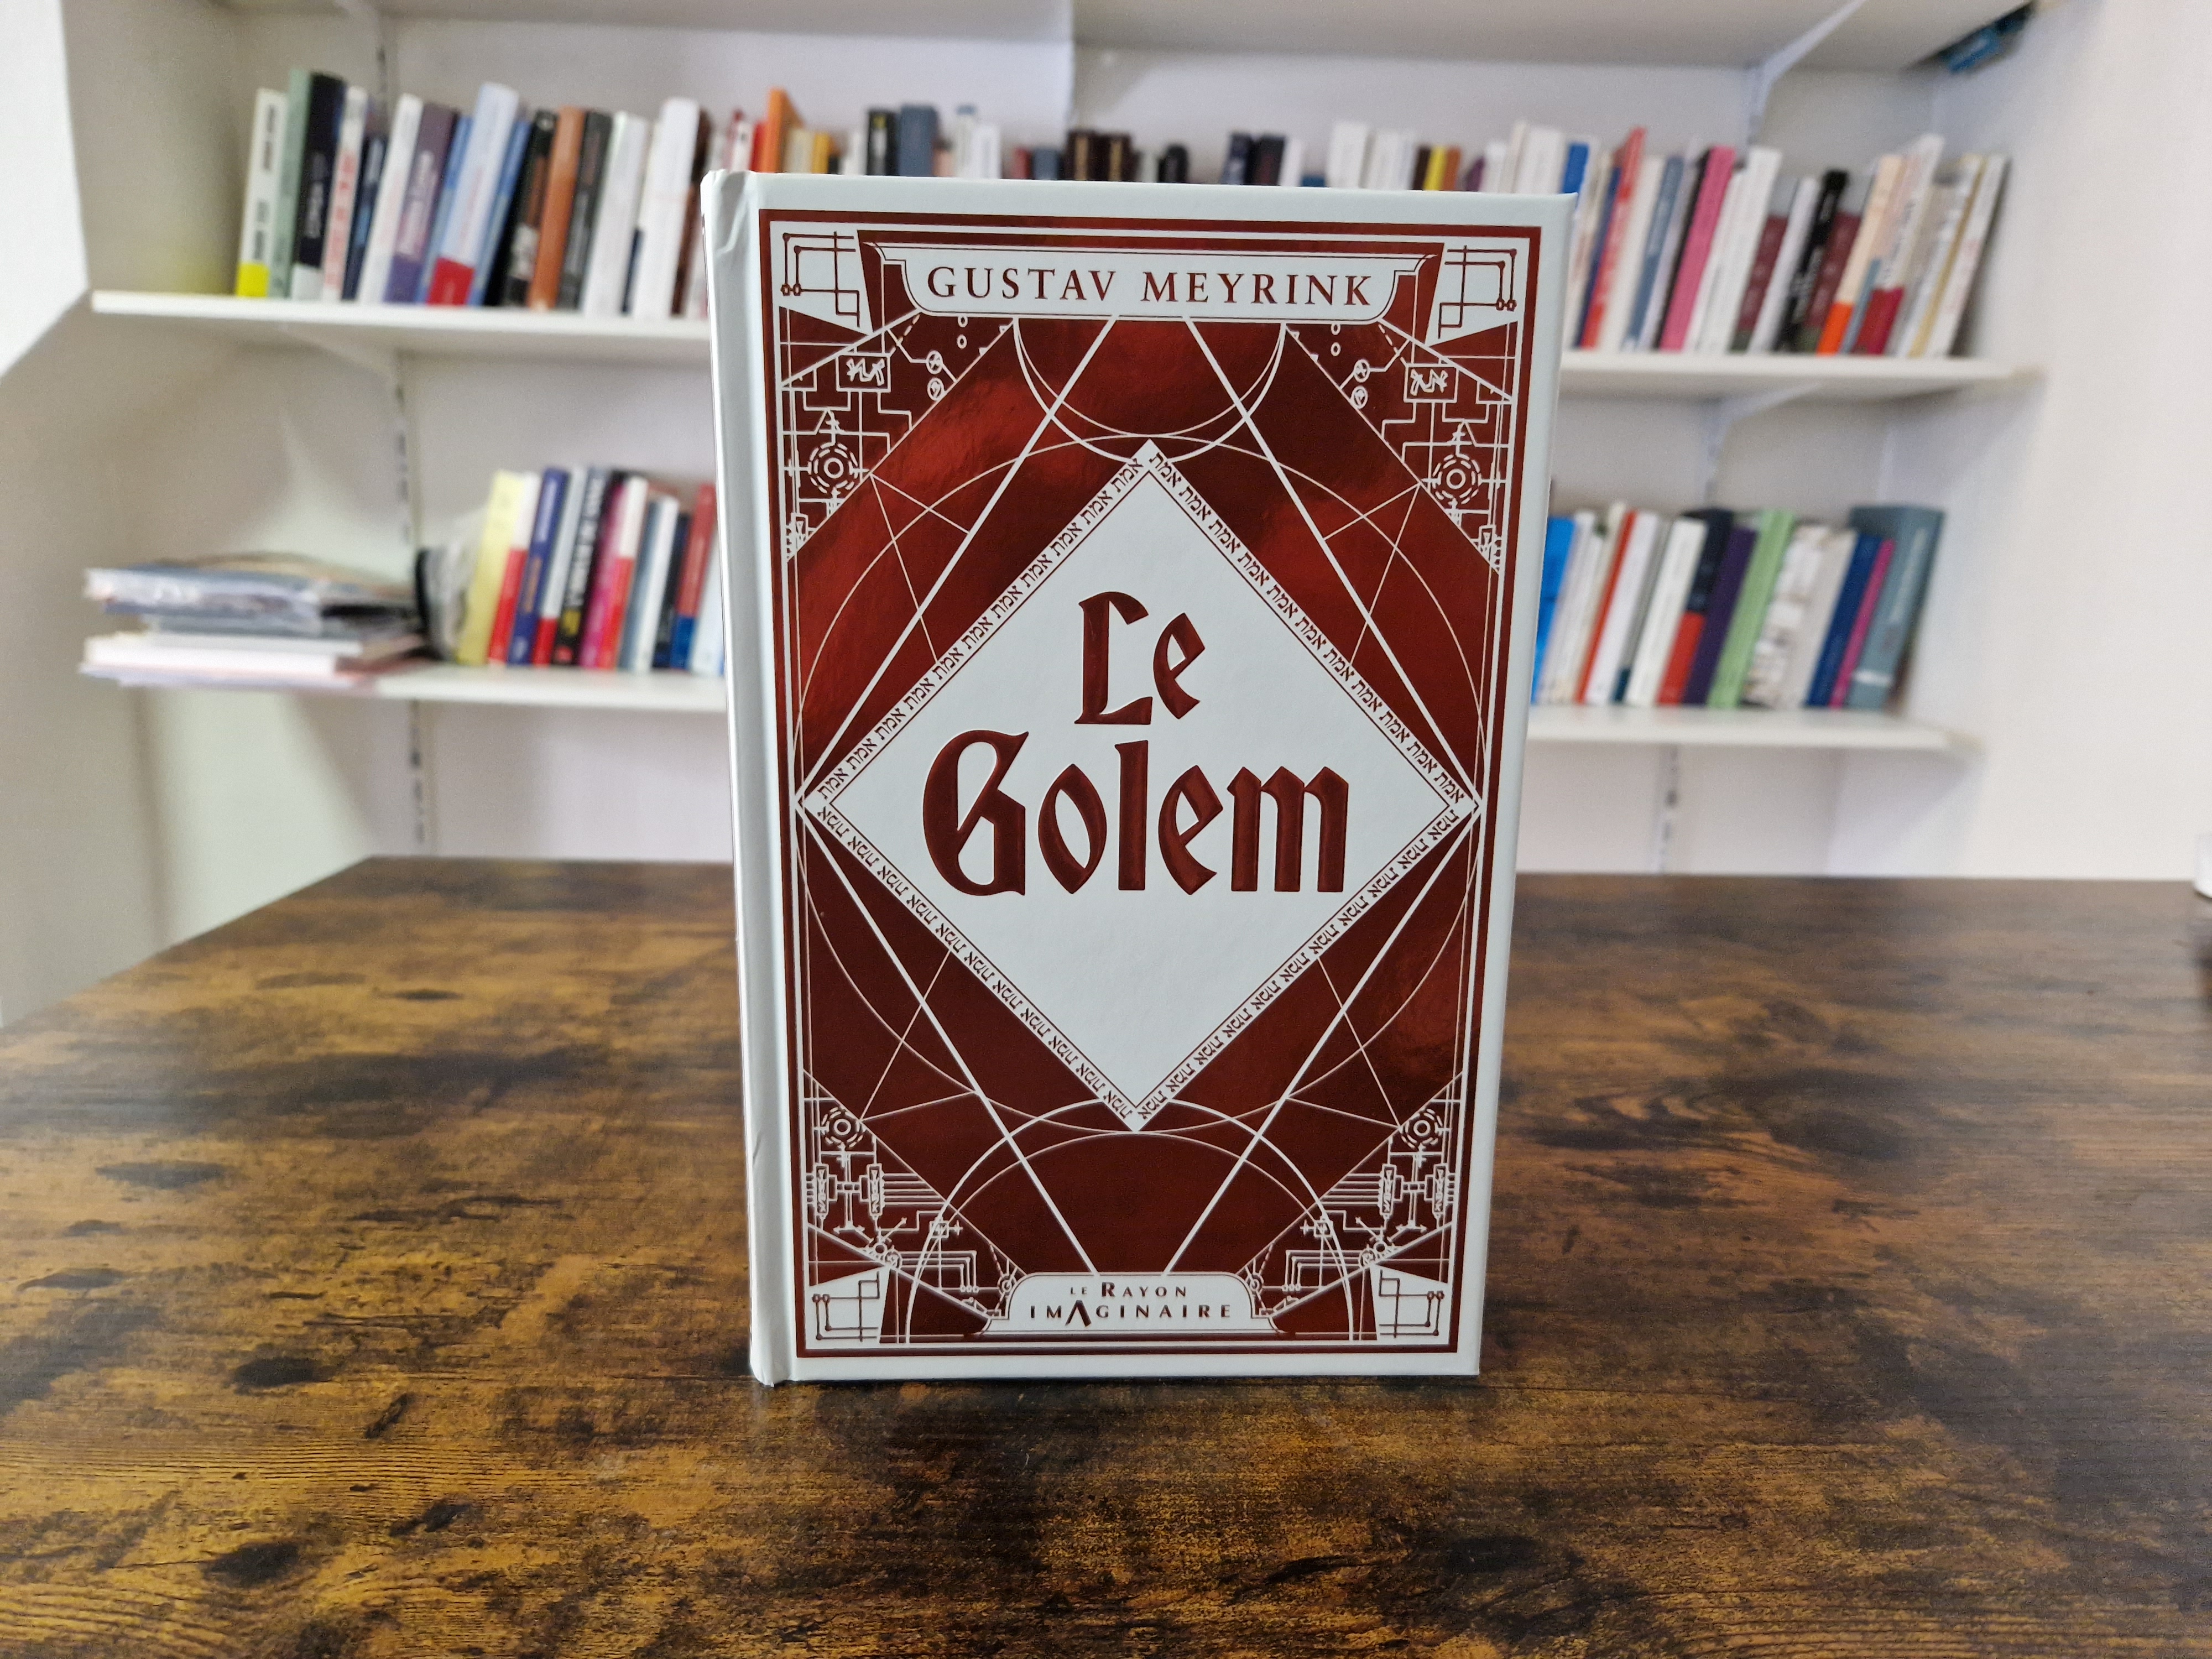 Le Golem : dans la tête de l'occultiste Gustav Meyrink